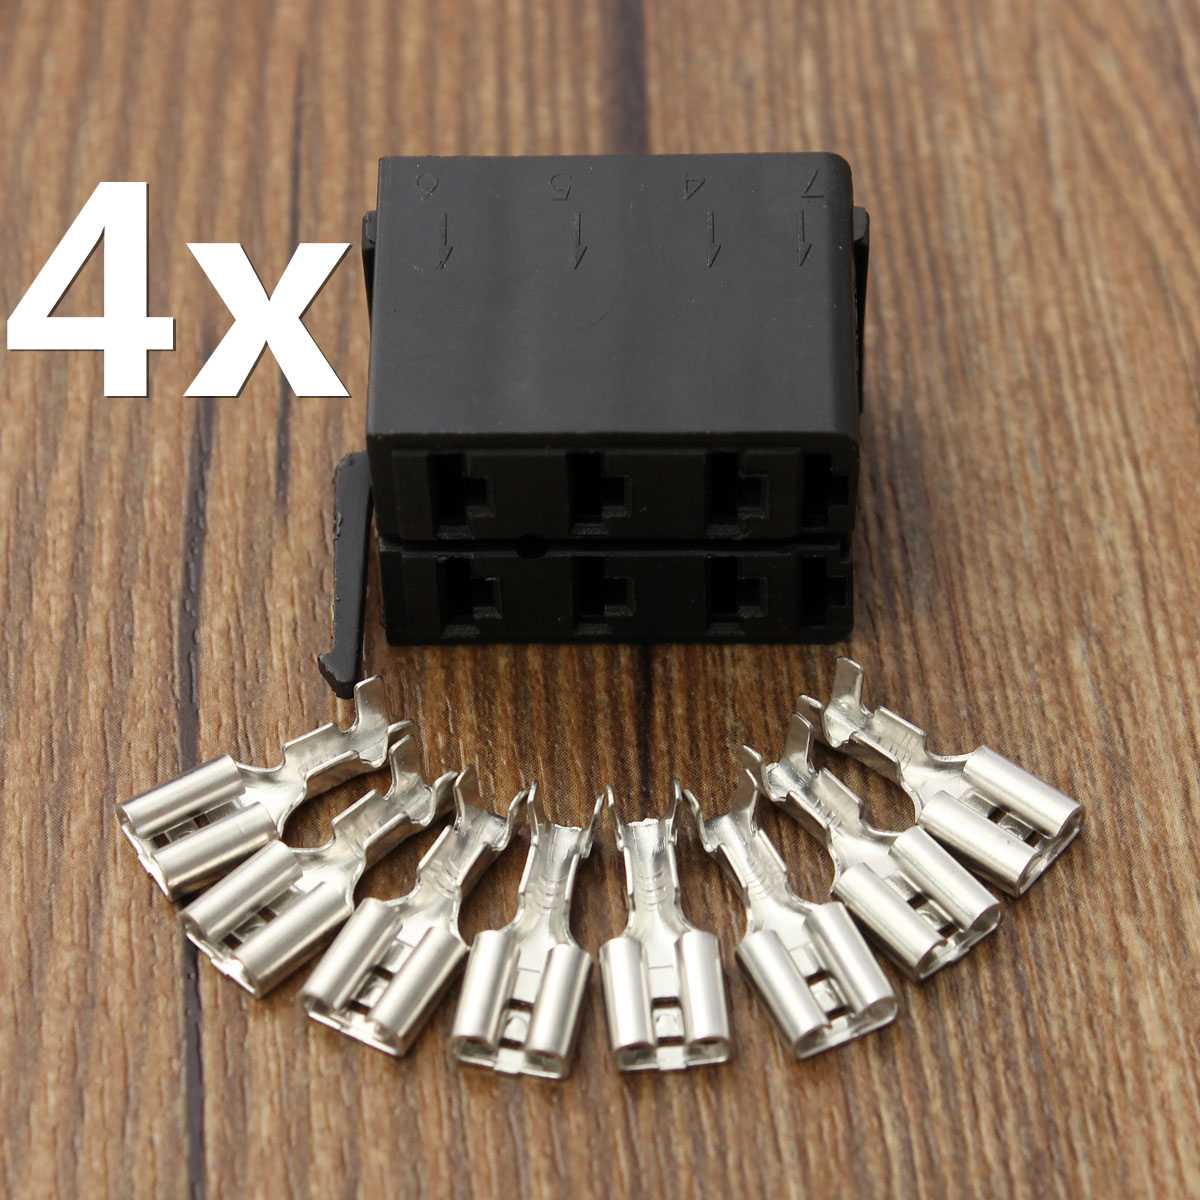 4 Set 8X ABS Legering Vrouwelijke Spade Terminals Connectors Voor ARB Socket Plug Carling Tuimelschakelaar